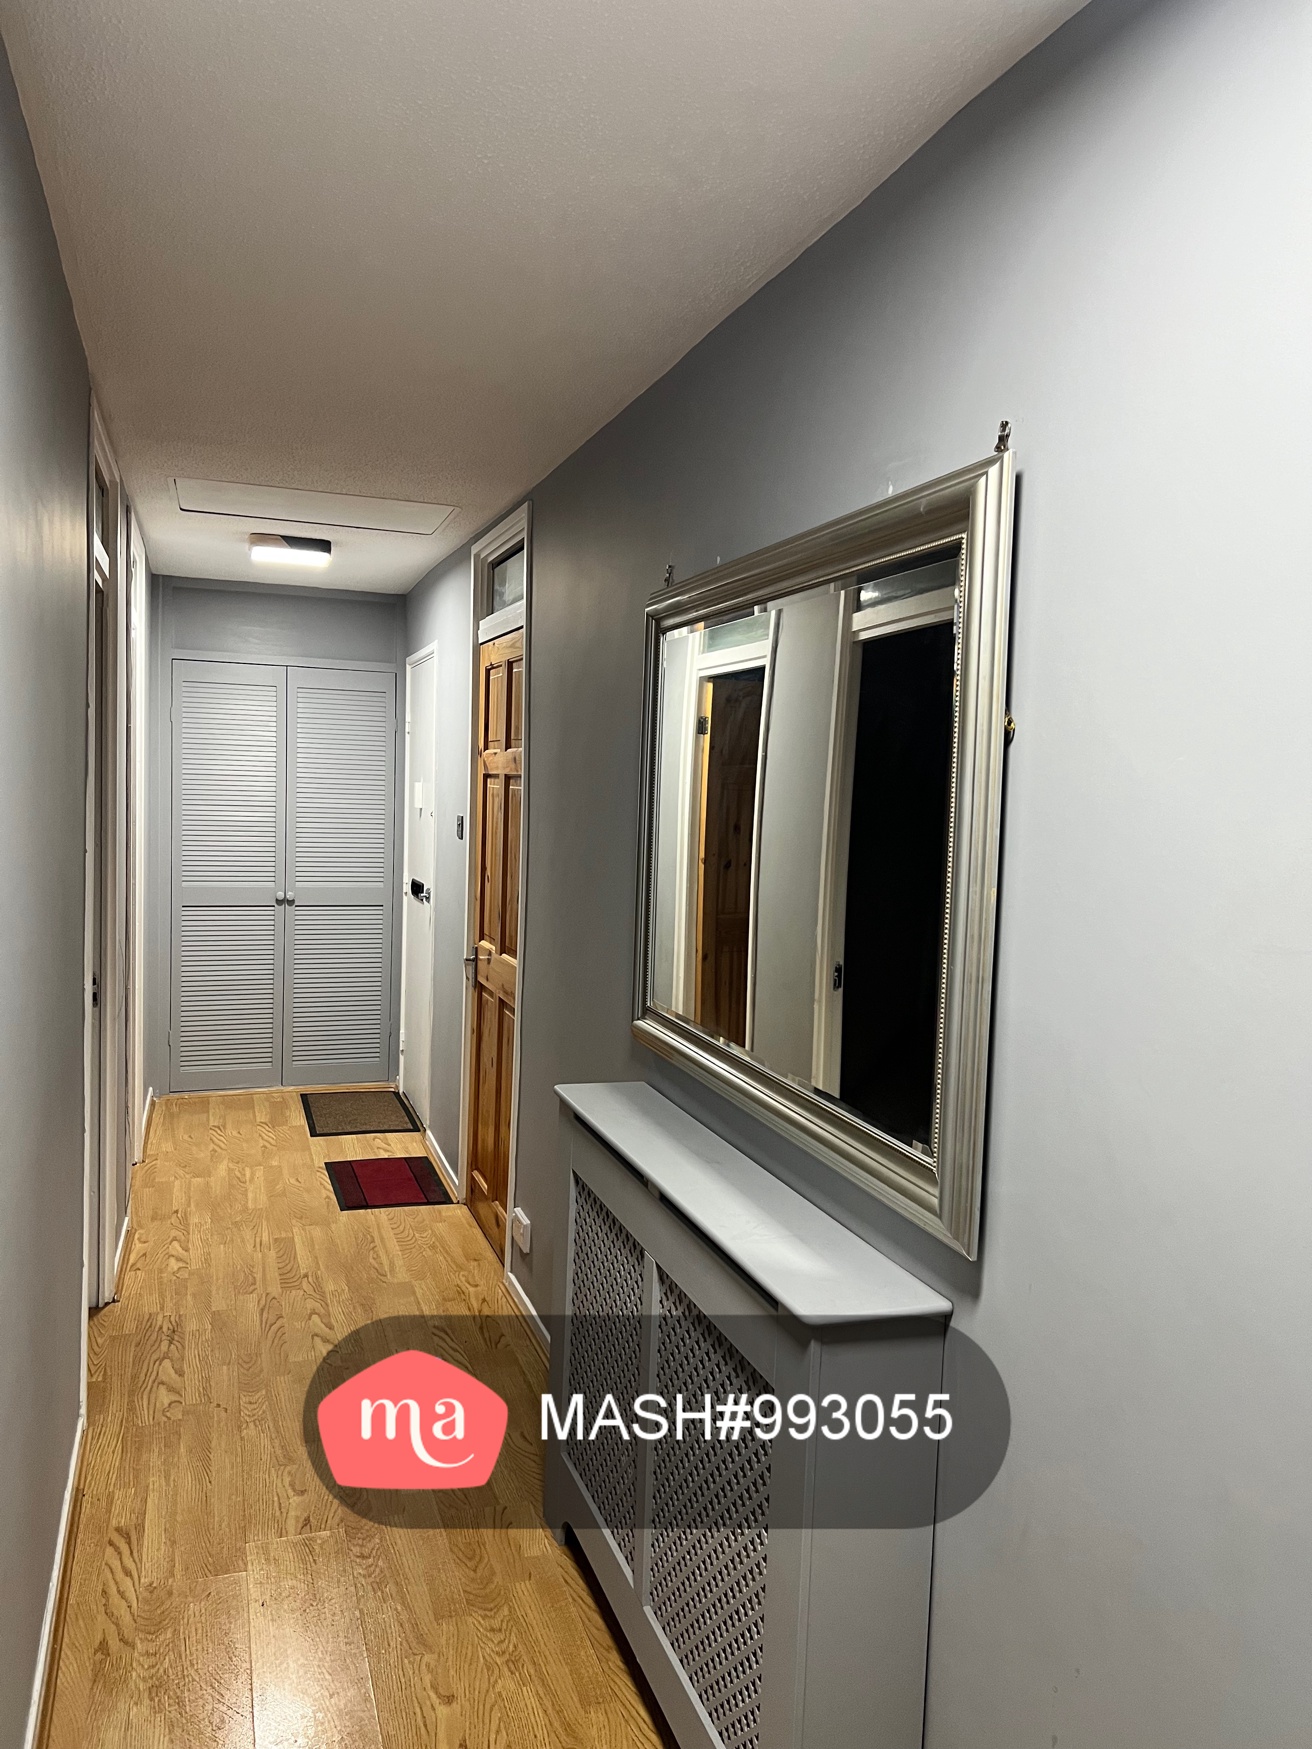 2 Bedroom Flat to rent in Windsor - Mashroom